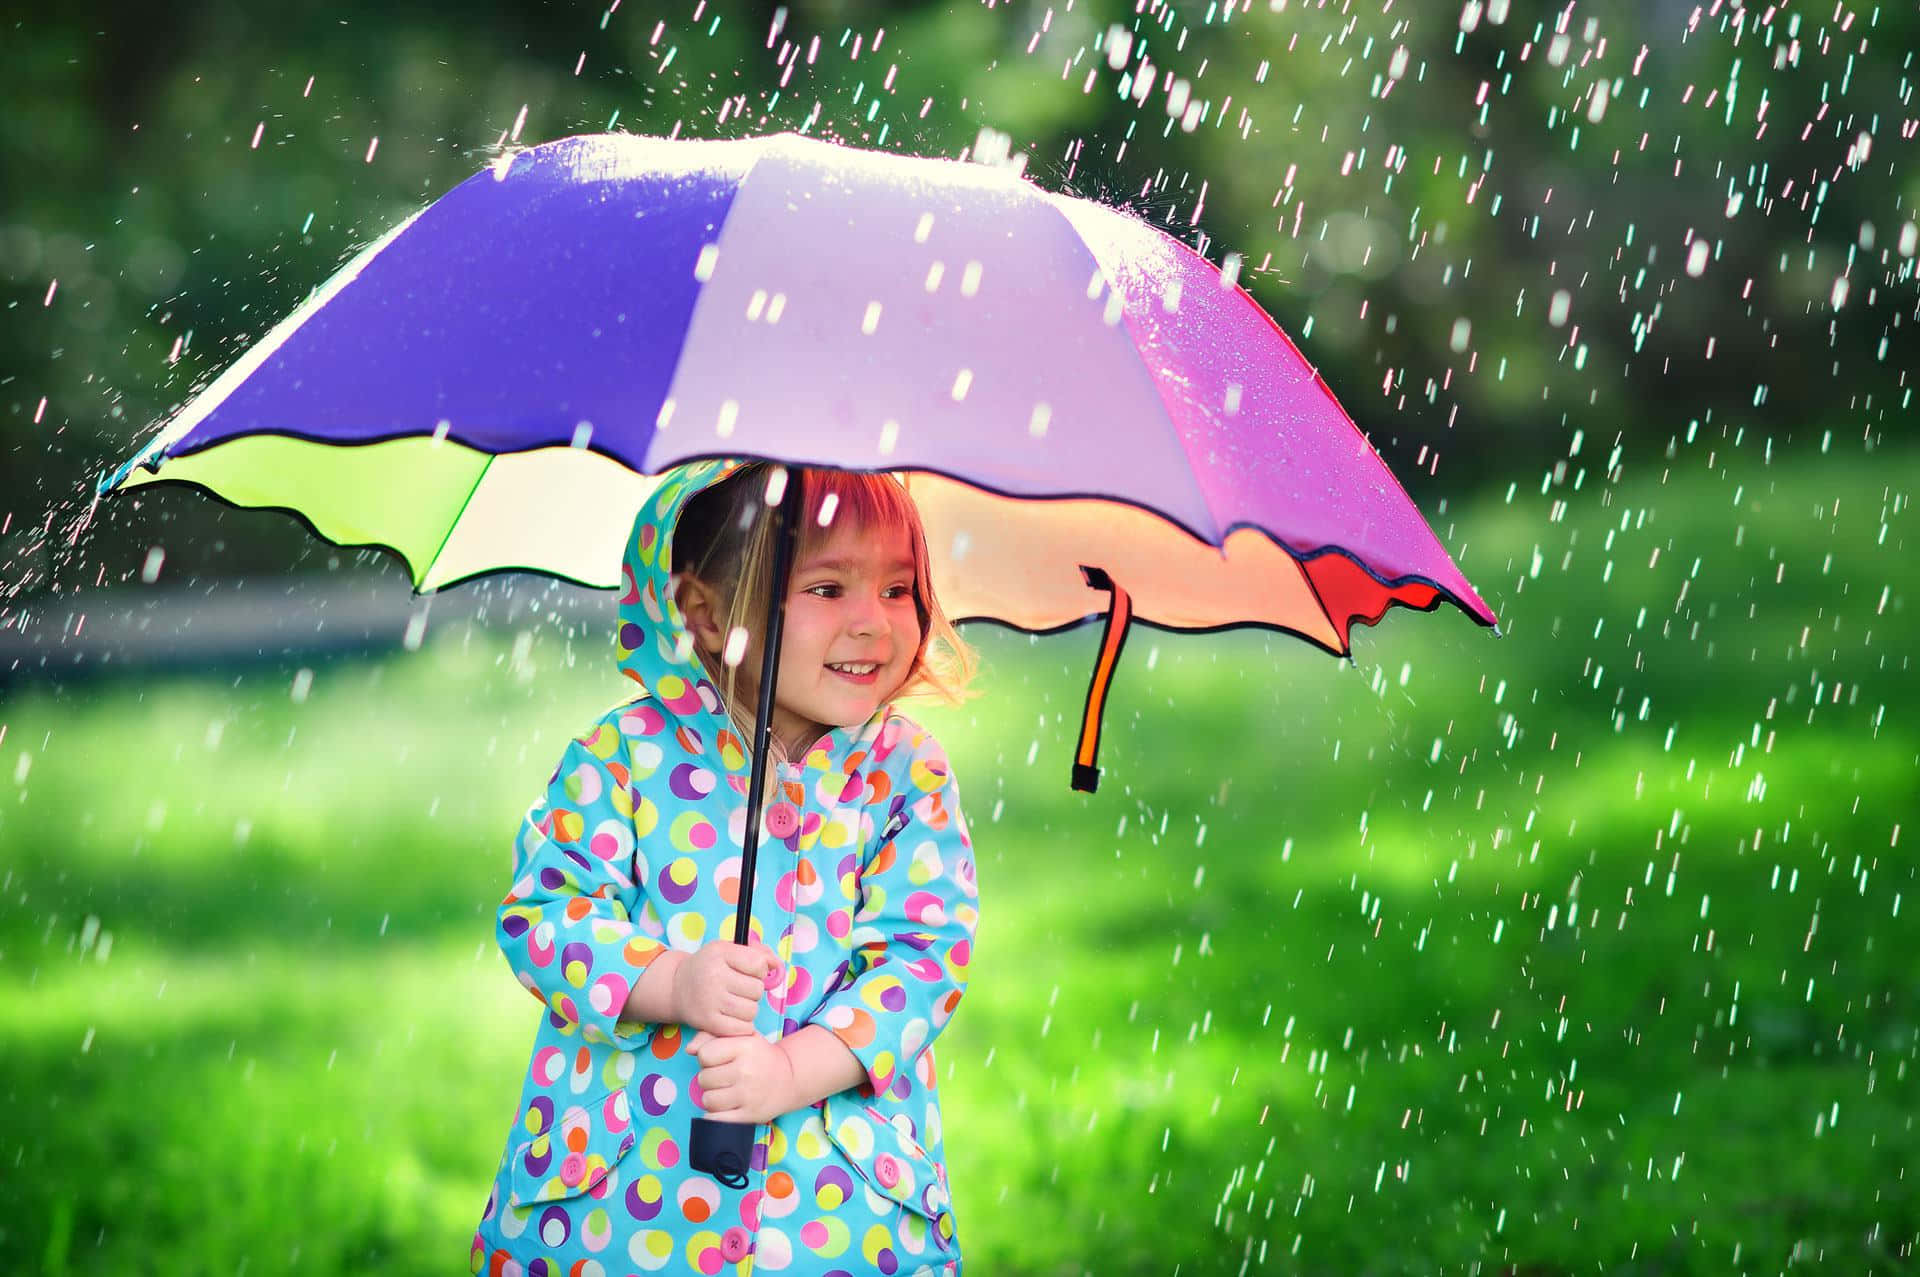 Bildmed En Liten Flicka Med Paraply På En Regnig Dag.